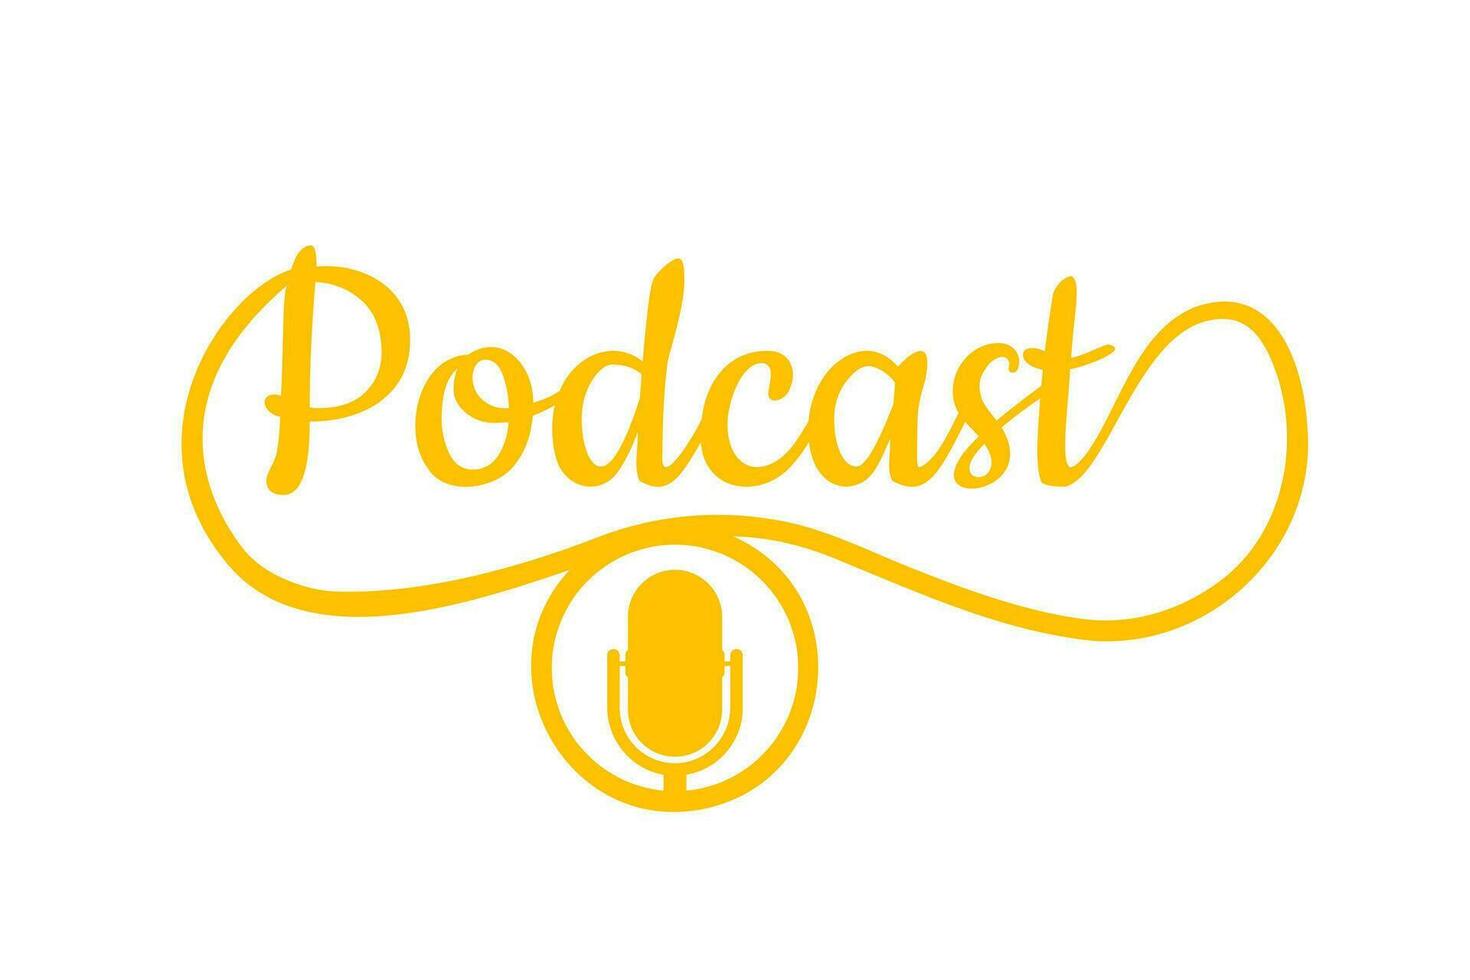 podcast. distintivo, ícone carimbo logotipo vetor estoque ilustração